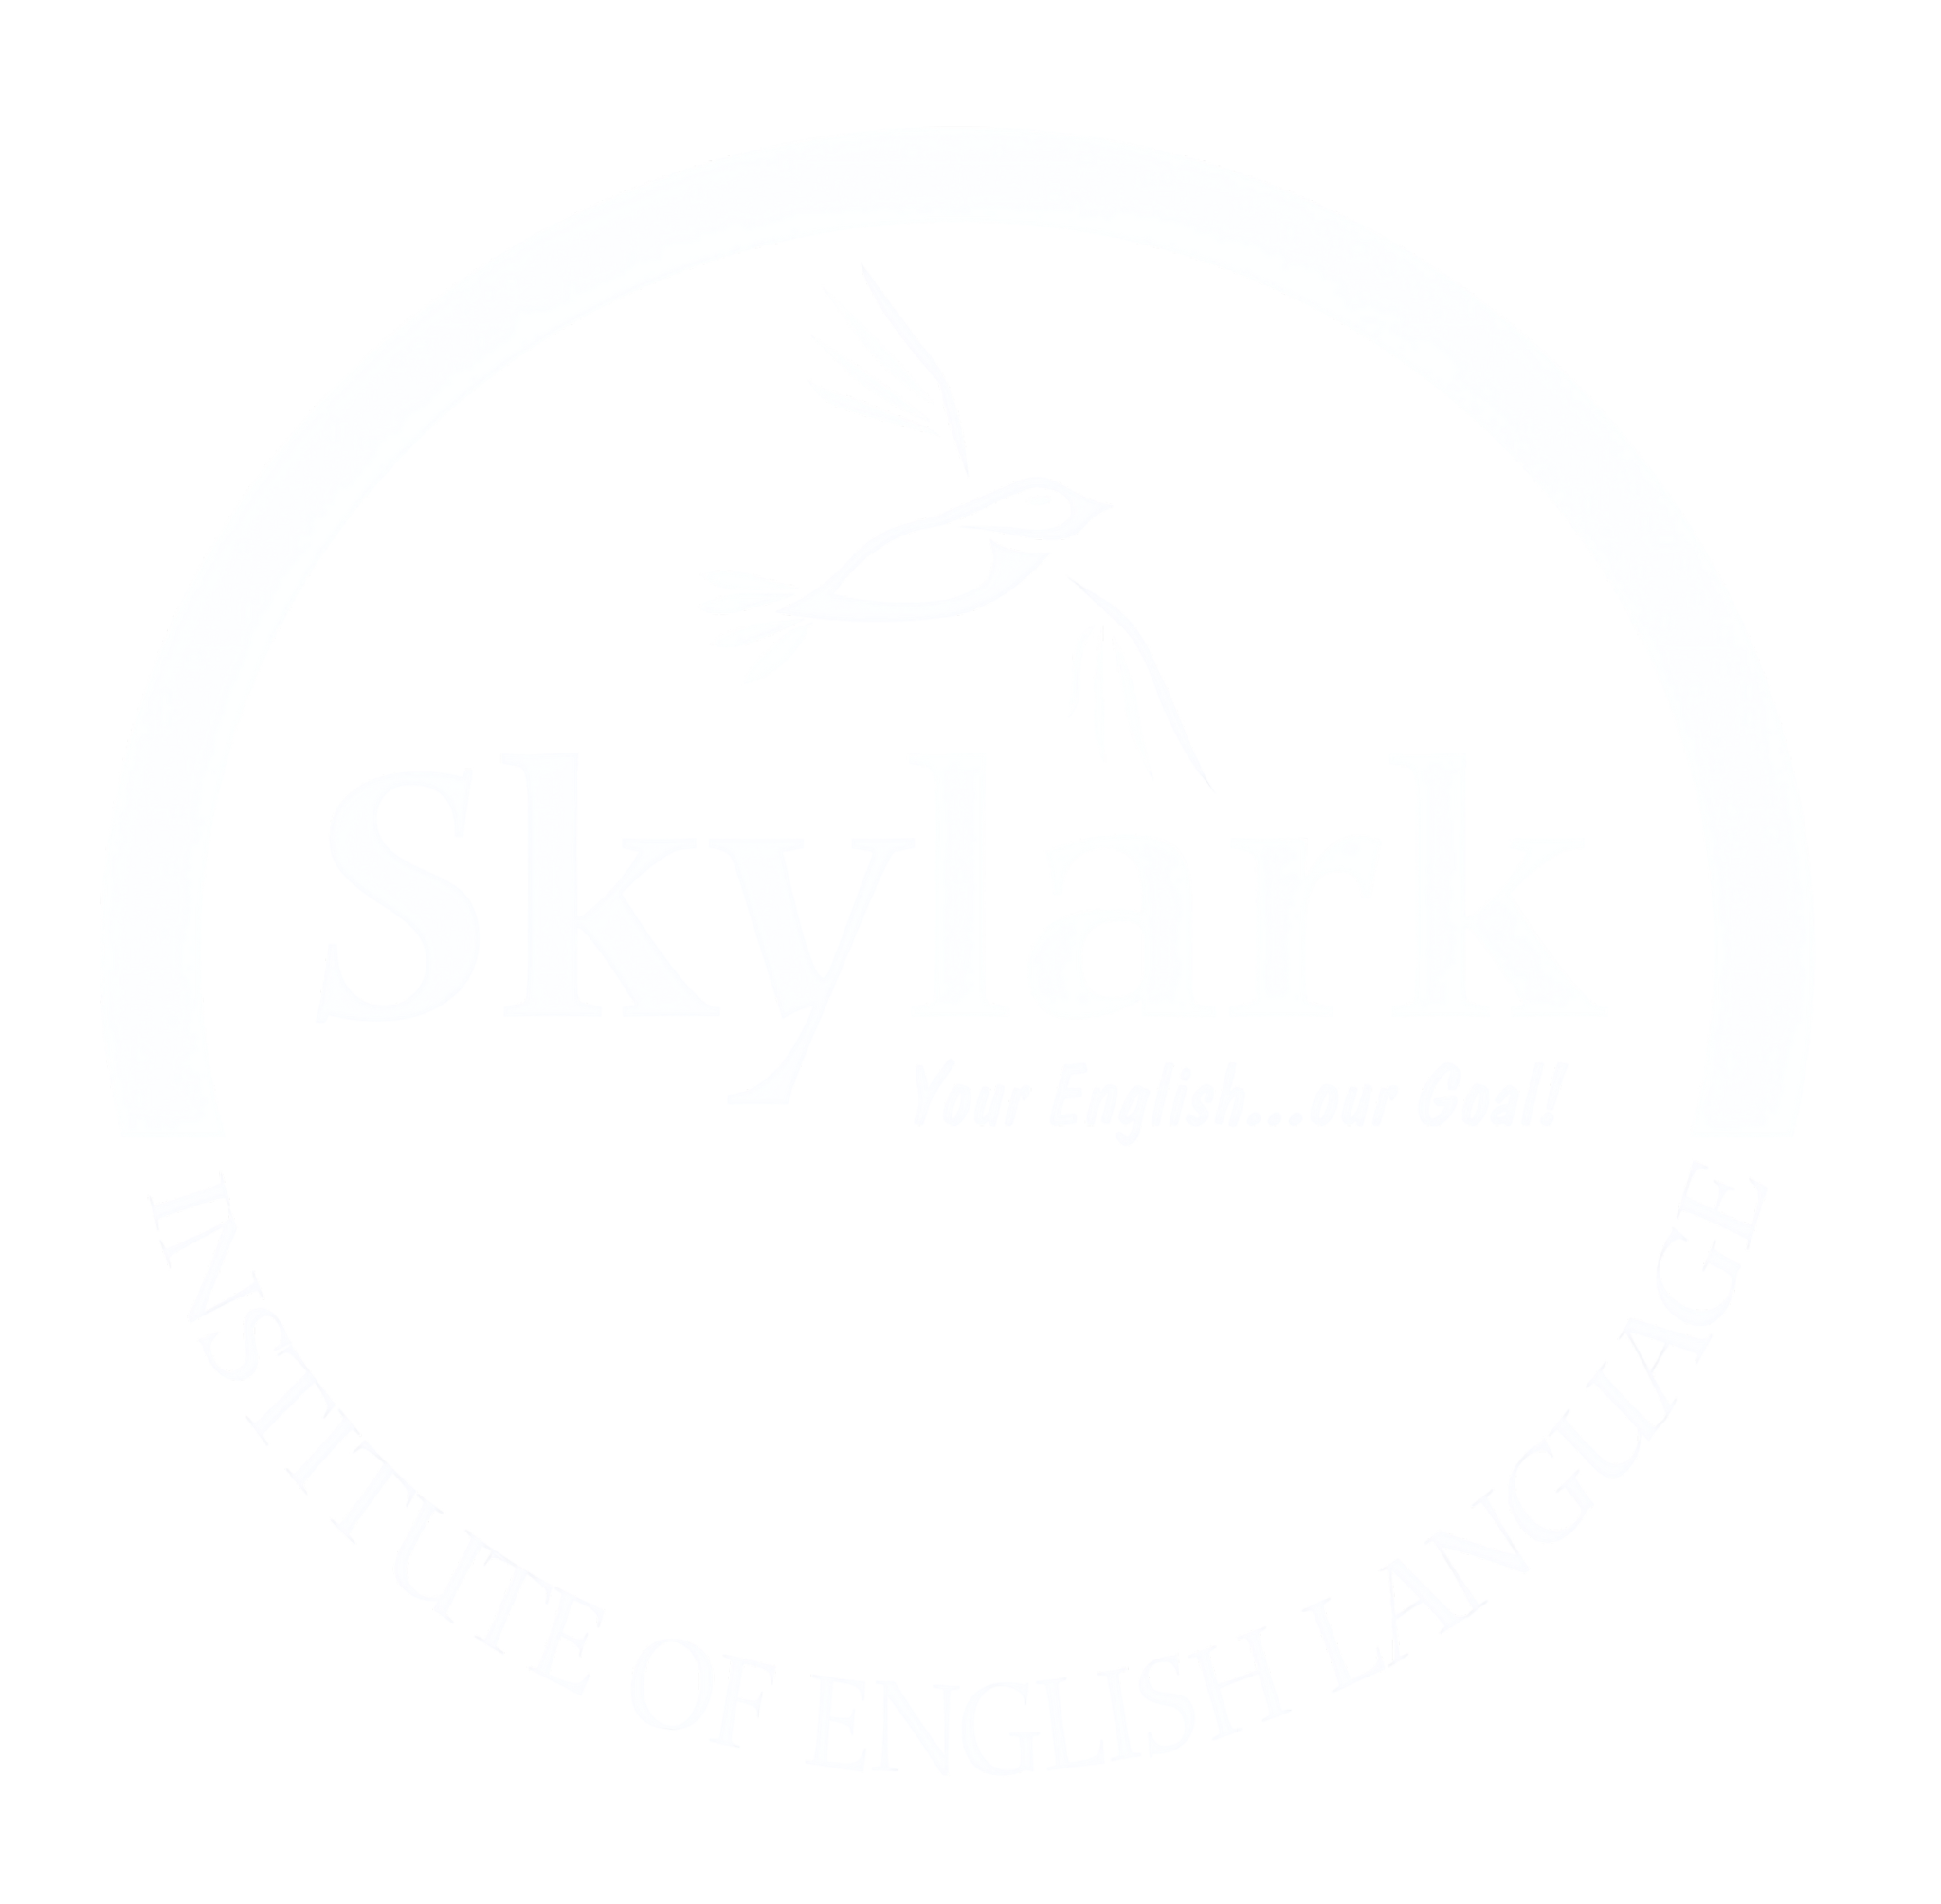 The Skylark Institute of English language